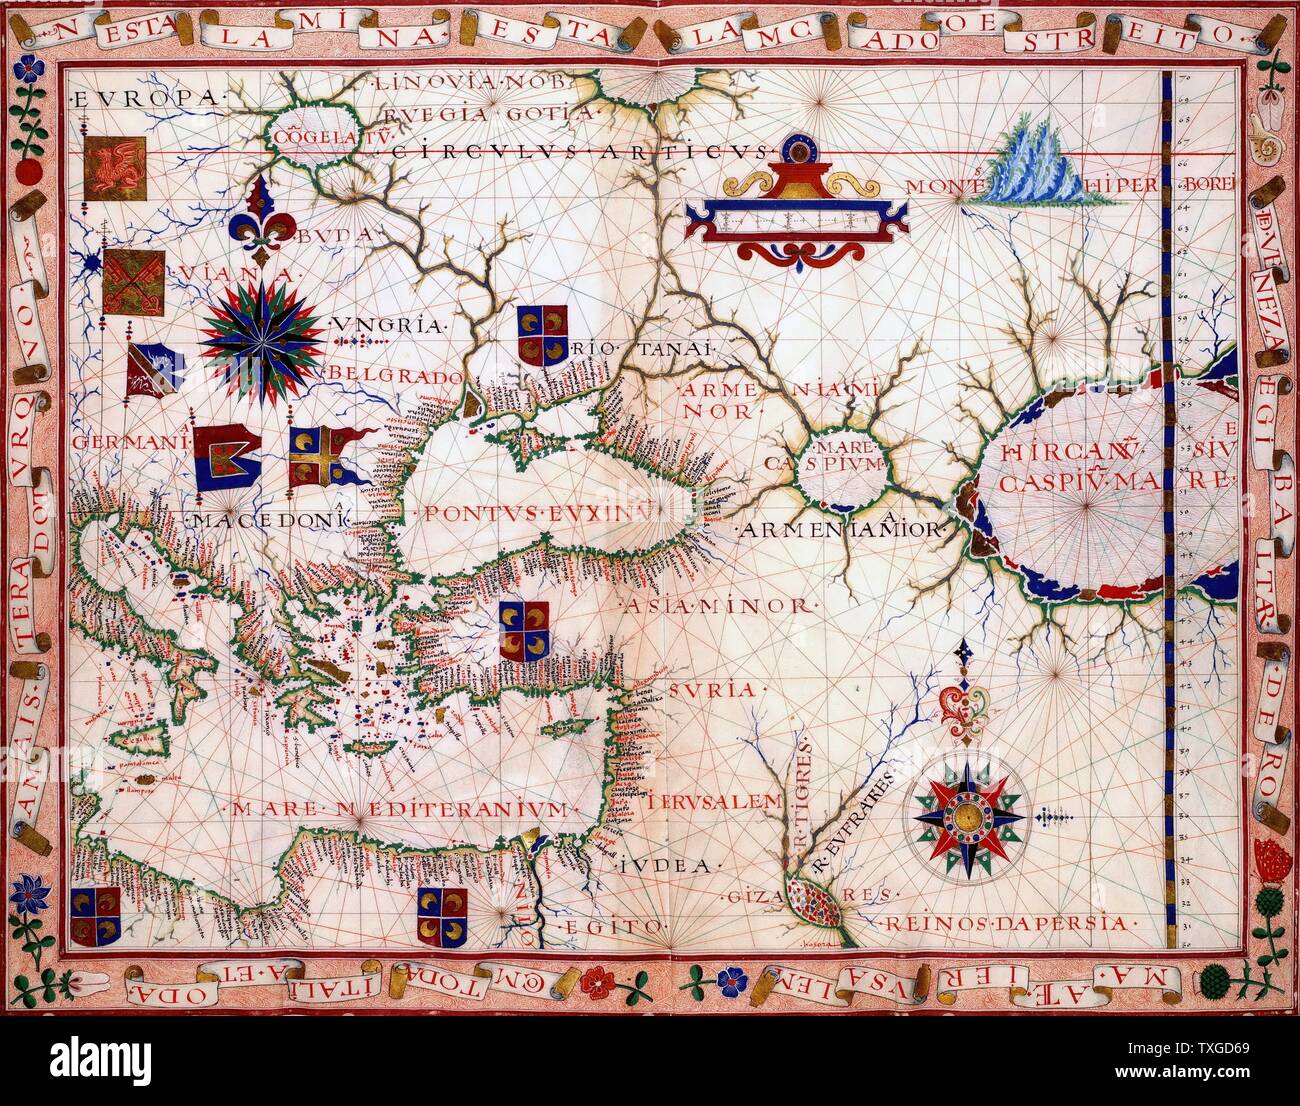 La carte du proche orient par Fernão Vaz Dourado (ch. 1520 - c. 1580), un cartographe portugais du seizième siècle. Il appartenait à la troisième période de l'ancien portugais en cartographie marine, qui se caractérise par l'abandon de l'influence de Ptolémée dans la représentation de l'Orient et l'introduction d'une meilleure précision dans la représentation des terres et continents. On sait peu de choses sur ce personnage historique. 1570 Banque D'Images